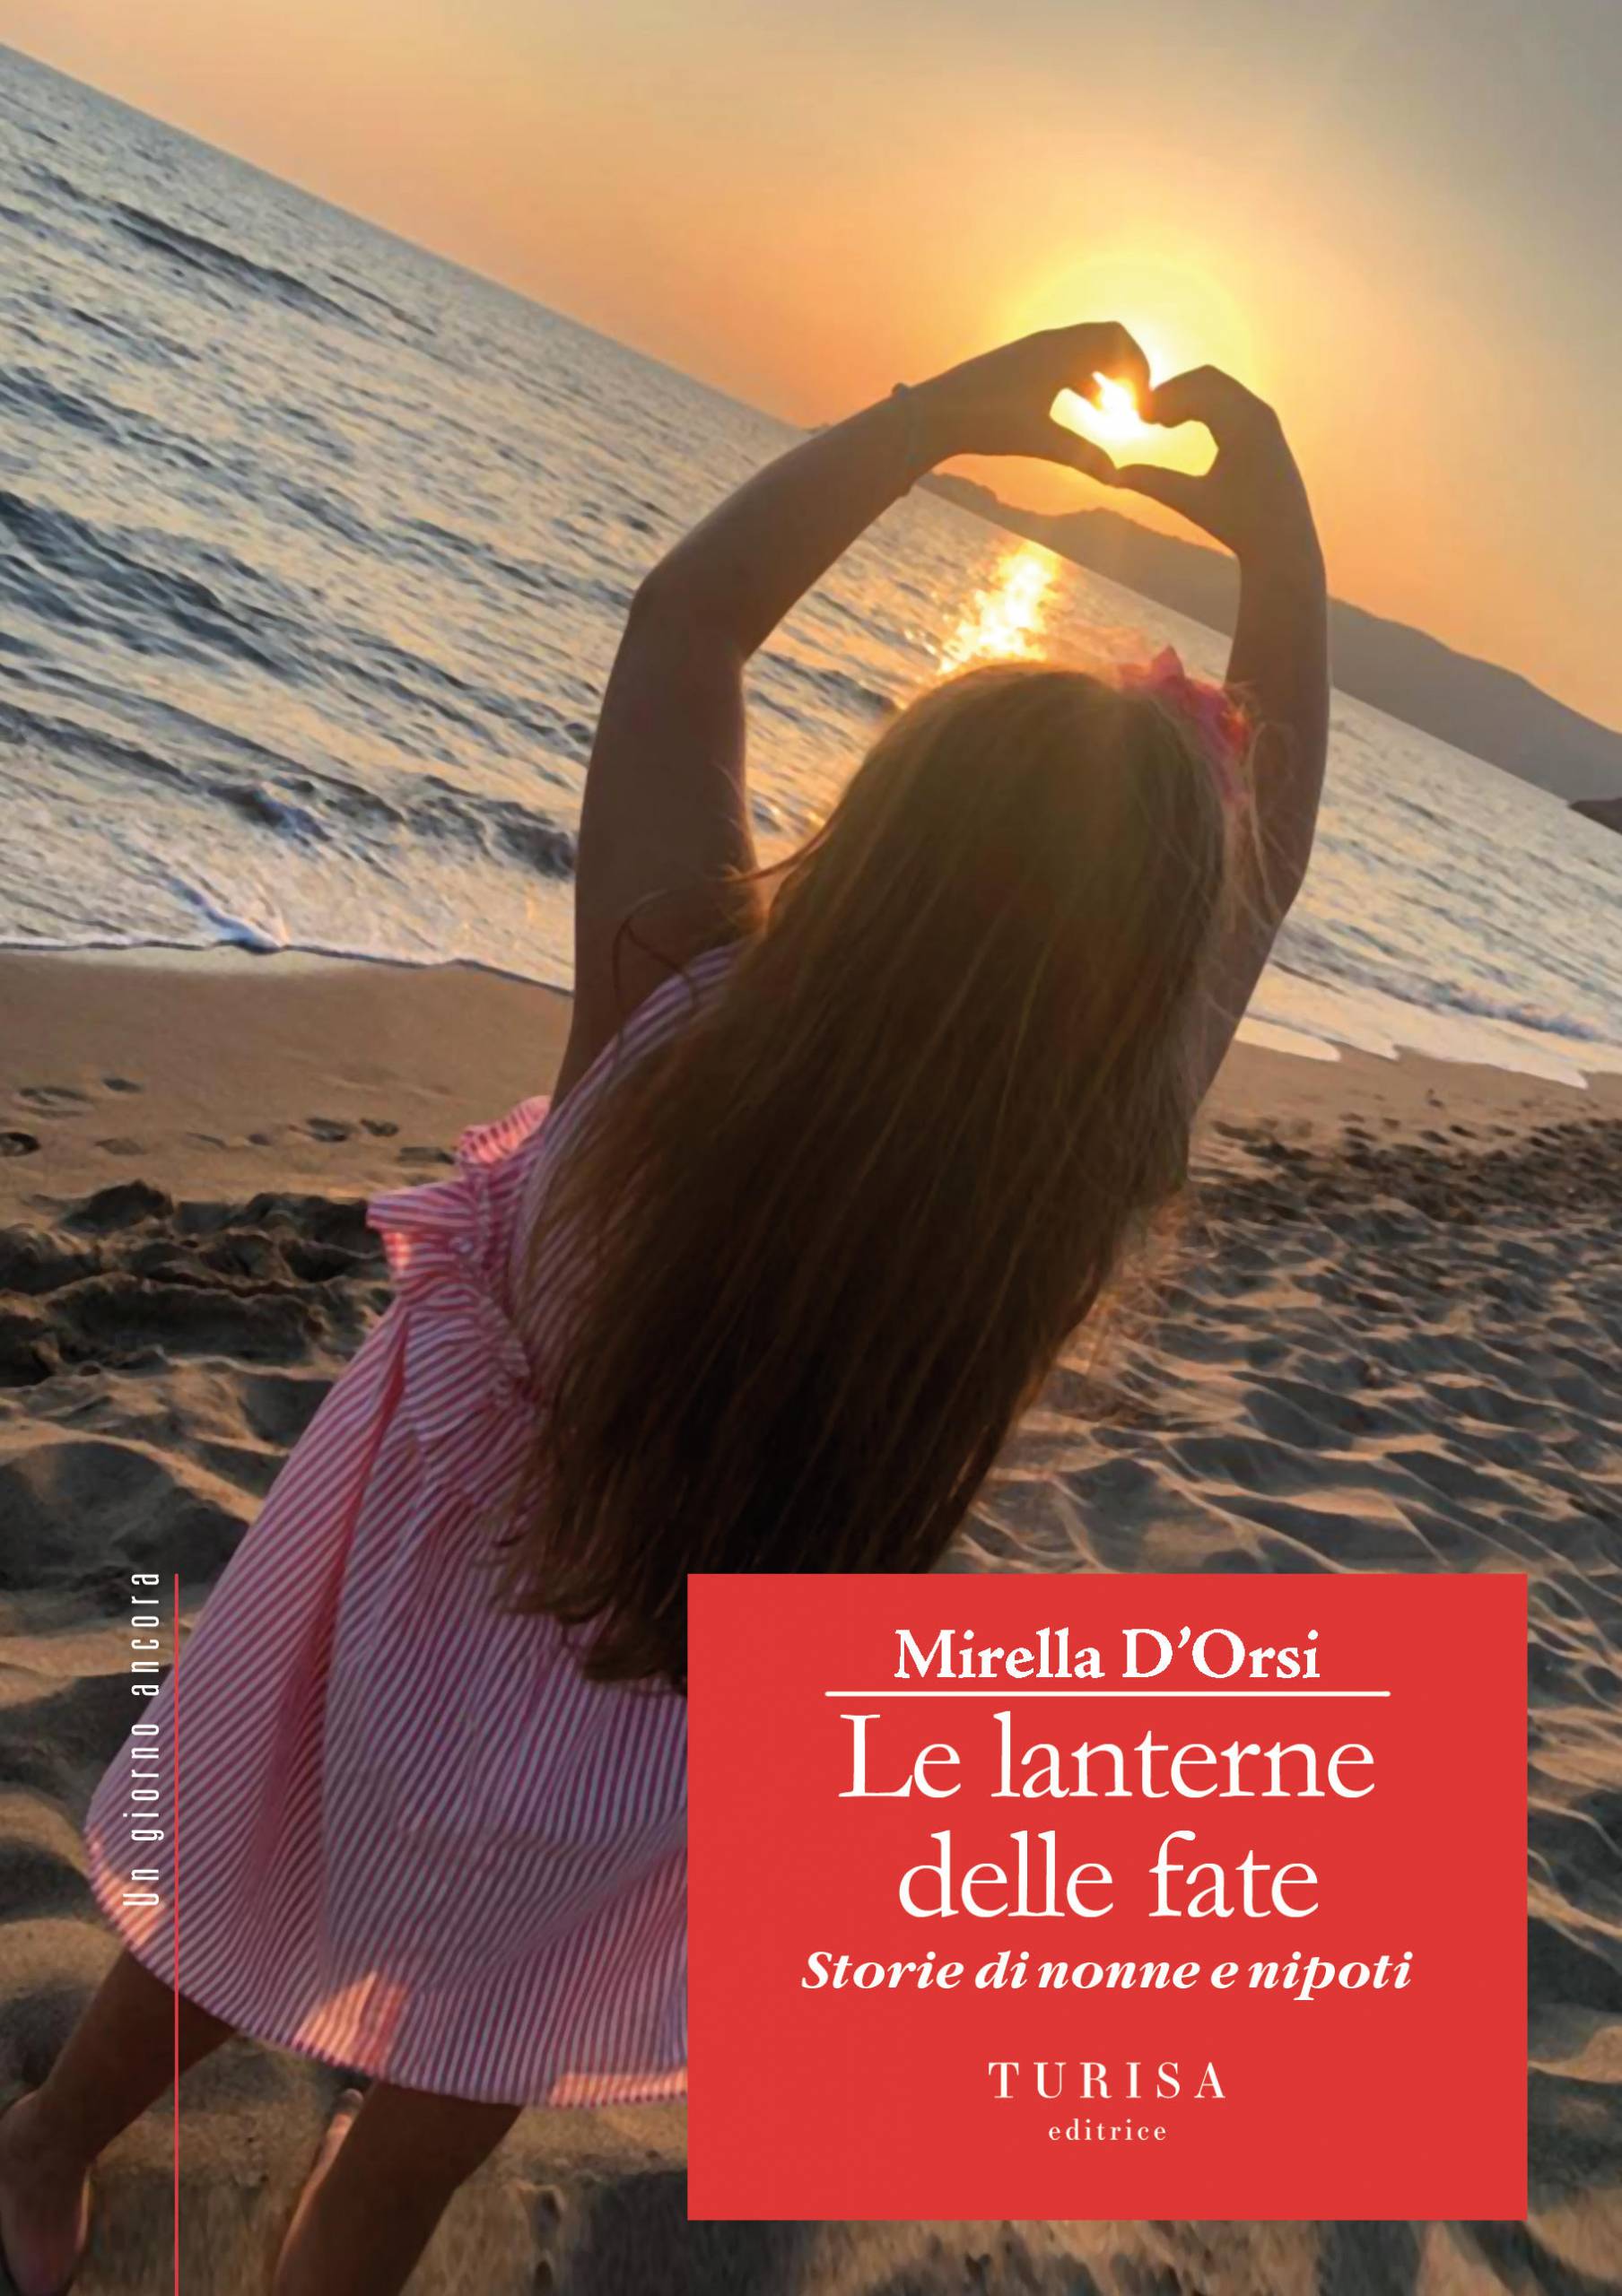 ‘Le lanterne delle fate, storie di nonne e nipoti’: il nuovo libro di Mirella D’Orsi